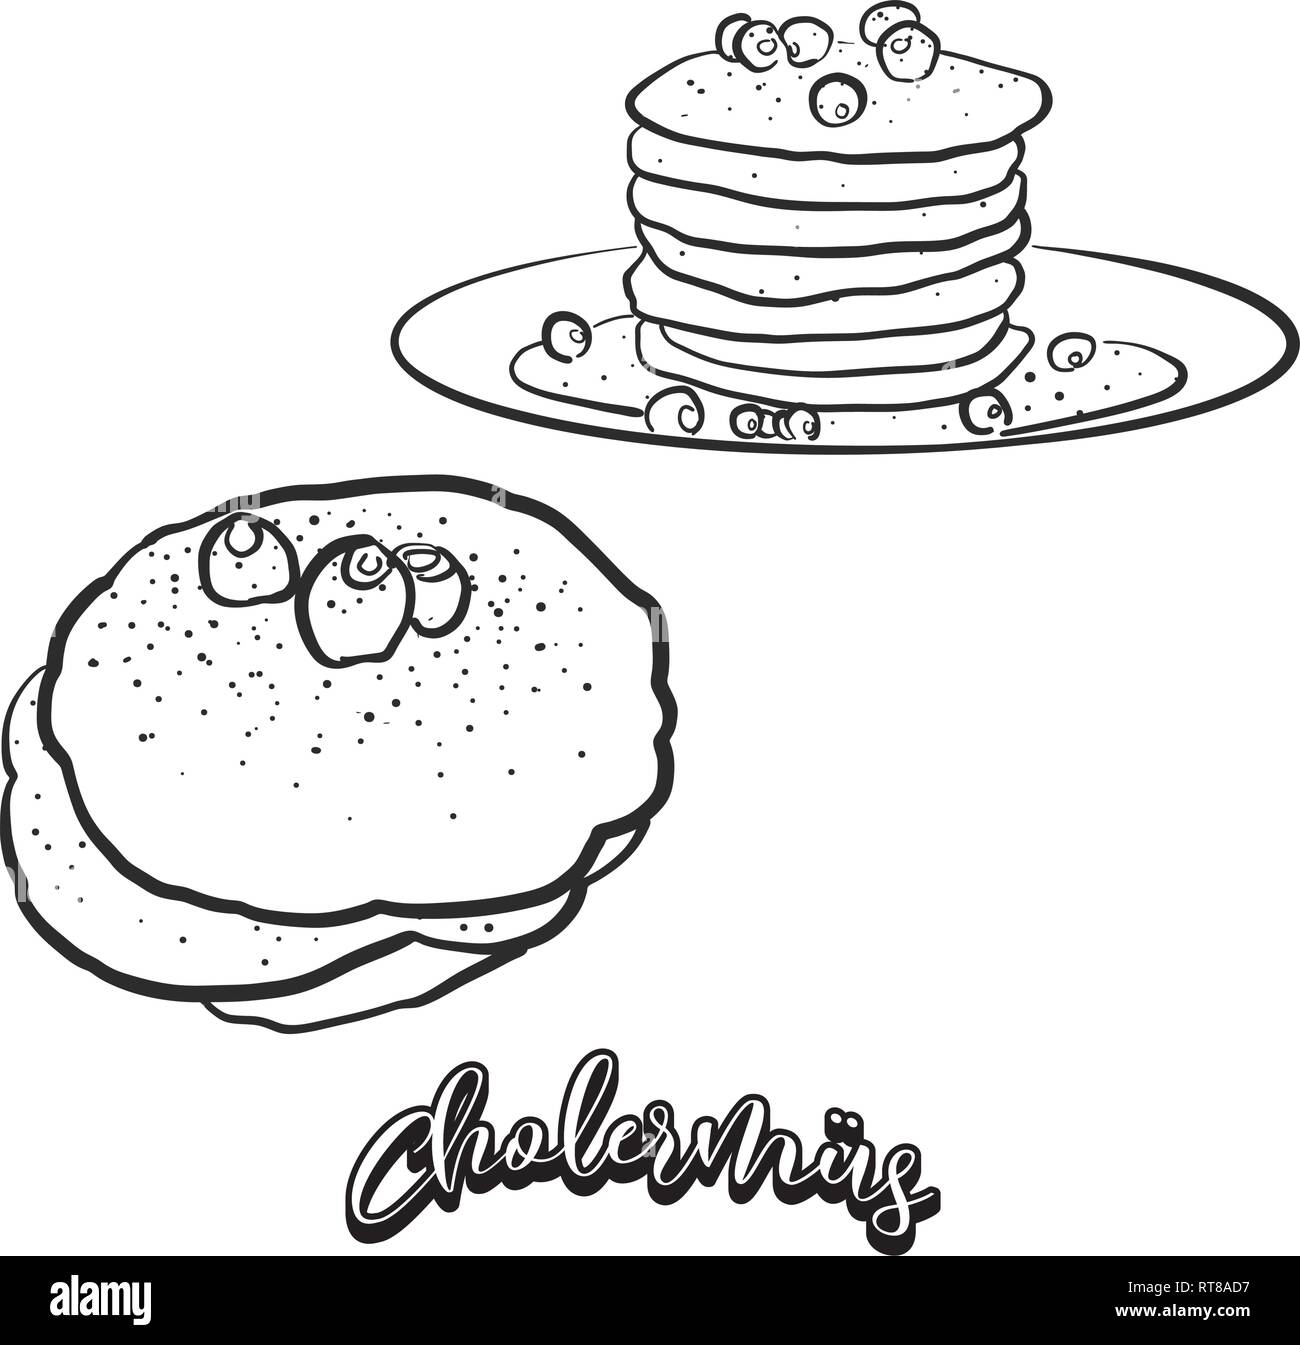 Hand gezeichnete Skizze von Cholermüs Brot. Vektor Zeichnung der Pfannkuchen essen, in der Regel in der Schweiz bekannt. Brot Abbildung Serie. Stock Vektor